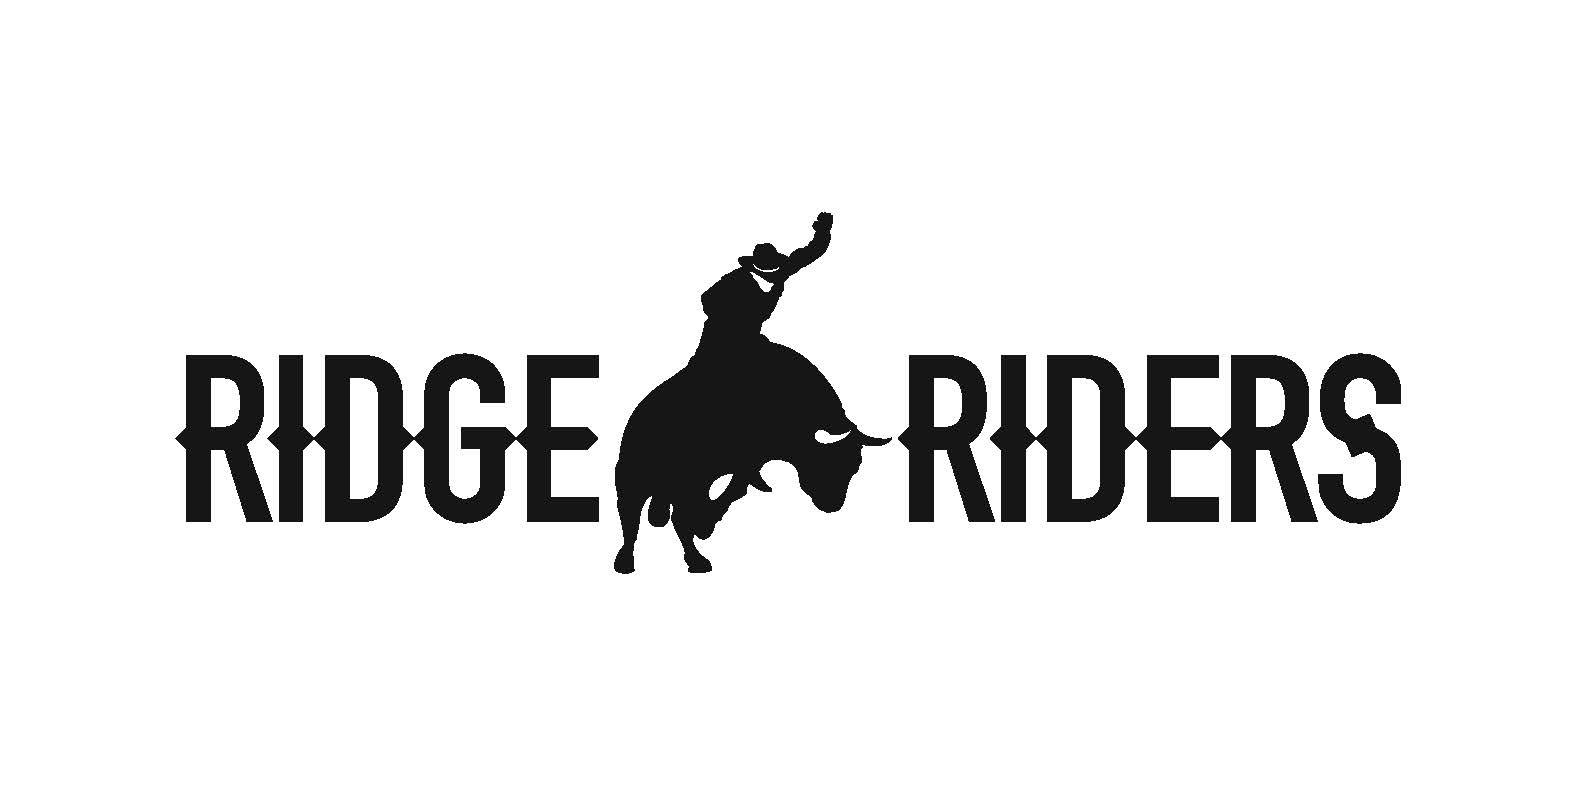 Arizona Ridge Riders
